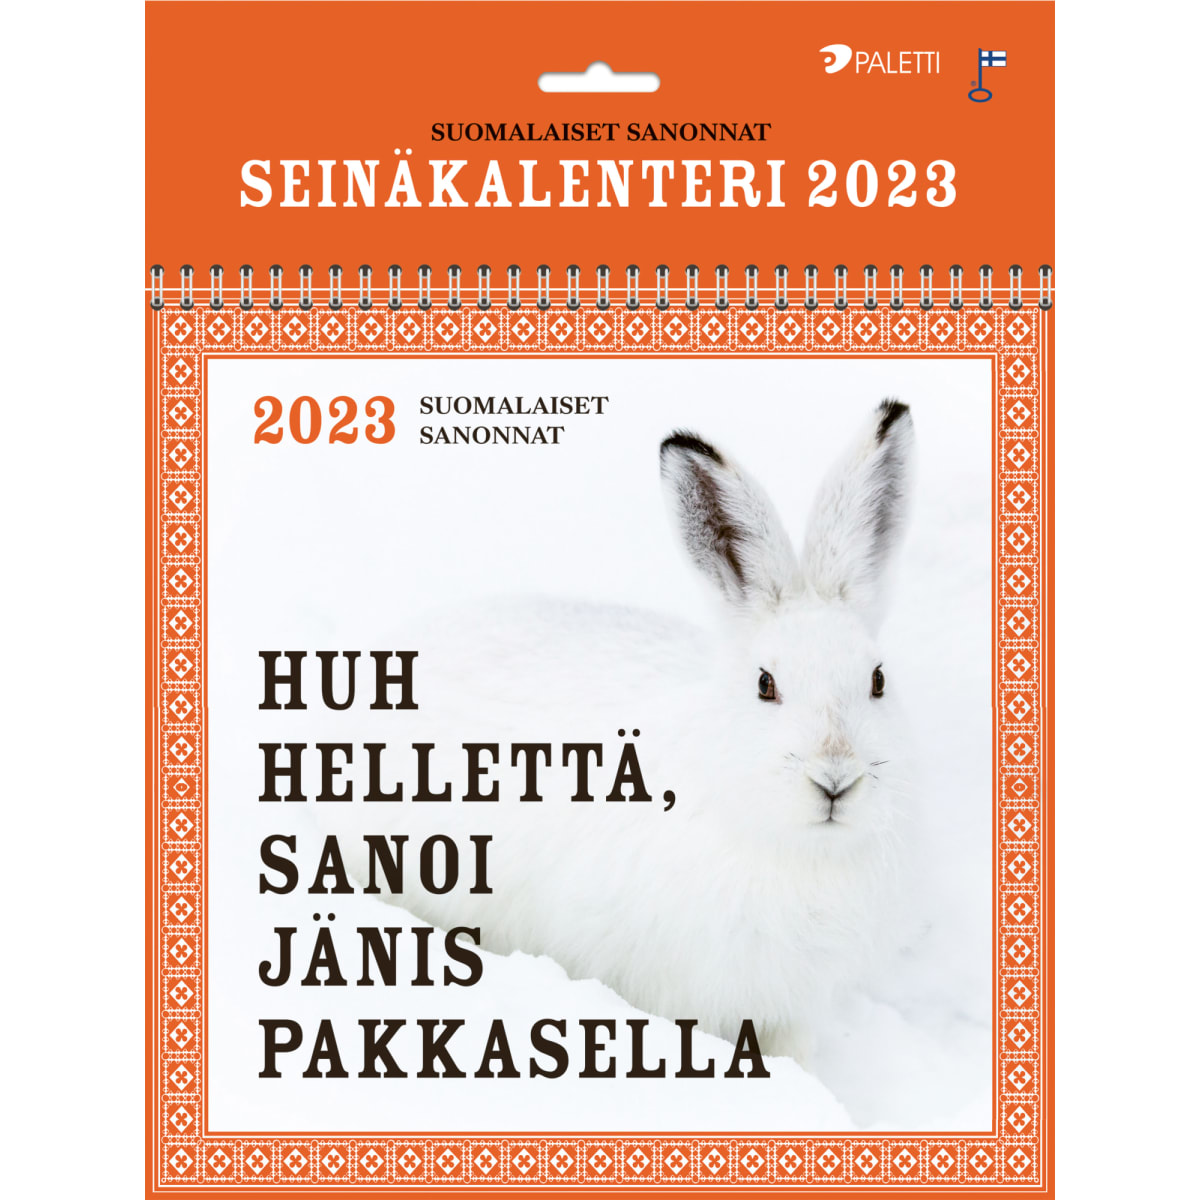 Paletti Suomalaiset sananlaskut 2023 kalenteri  verkkokauppa